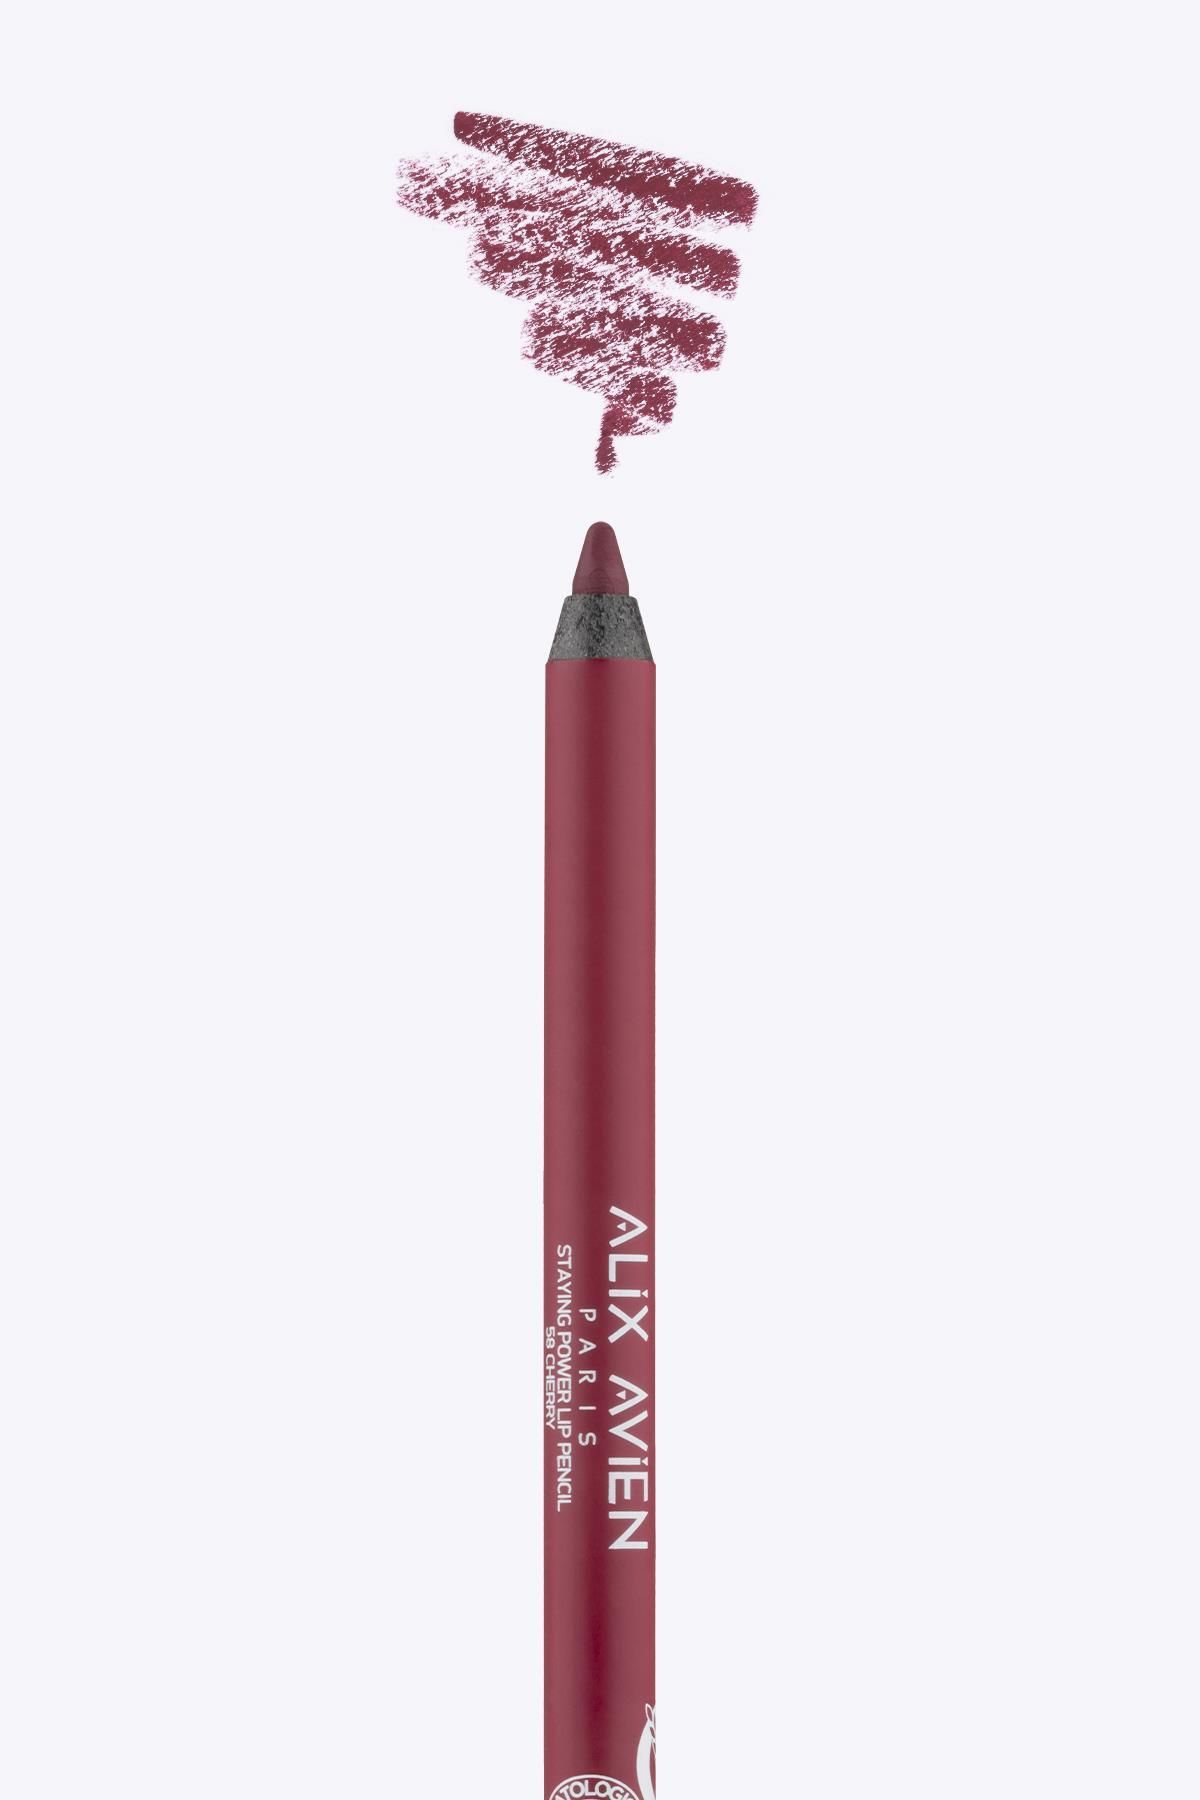 Alix Avien Uzun Süre Kalıcı Suya Dayanıklı Dudak Kalemi - Staying Power Lip Pencil 58 Cherry